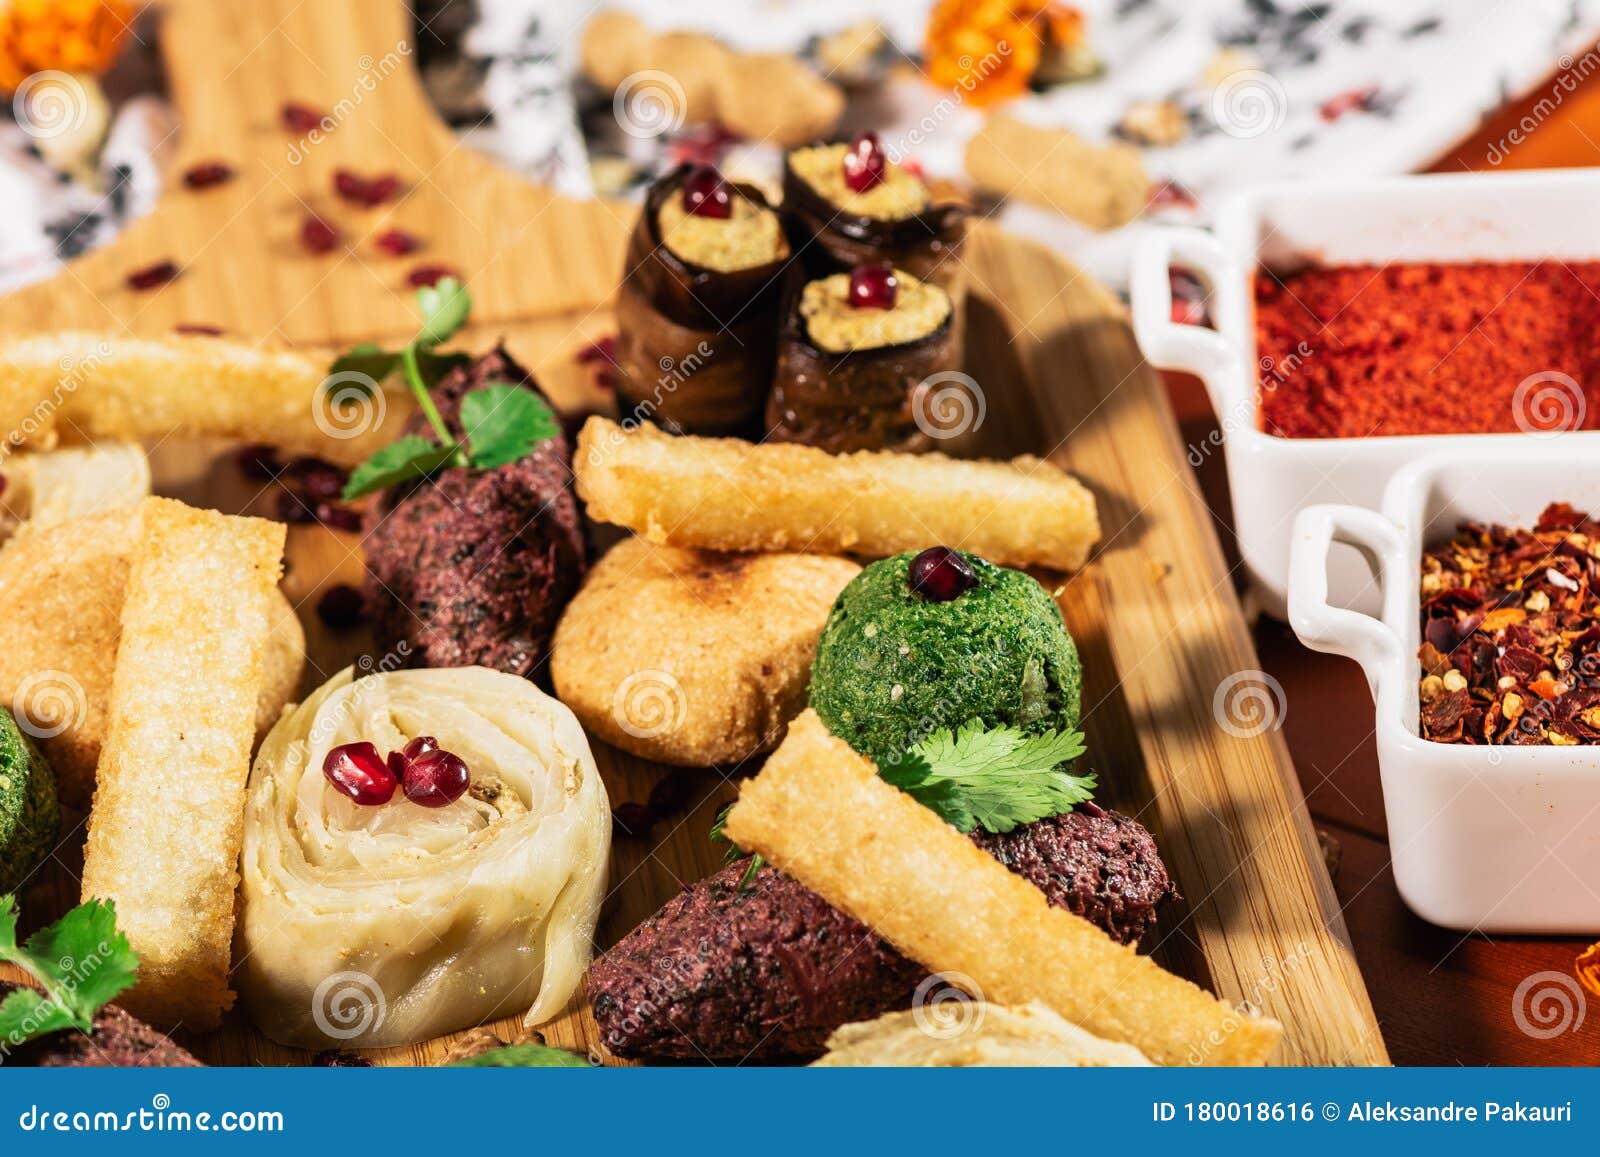 Foto en macro del plato tradicional georgiano Pkhali o Phali en bandeja de madera Basura picada y picada, berenjena, espinacas, habas, remolacha combinadas con nueces de tierra, vinagre, cebollas, ajo, hierbas